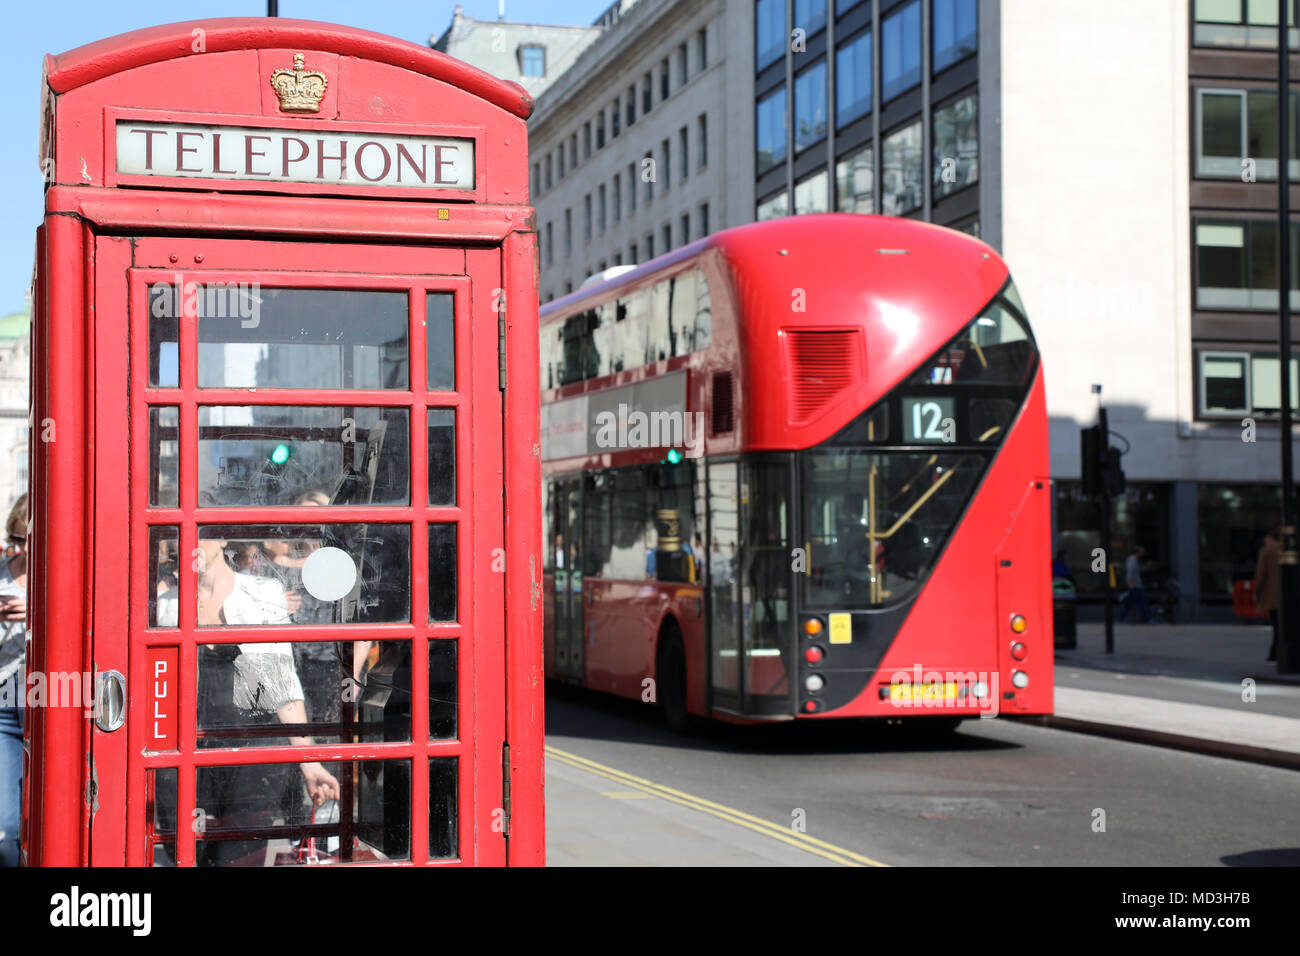 London, Großbritannien. 18. April 2018. Eine rote Telefonzelle am Waterloo Place, London, mit einem traditionellen roten London Bus vorbeifahren, am 18 April, 2018 Quelle: Dominic Dudley/Alamy leben Nachrichten Stockfoto